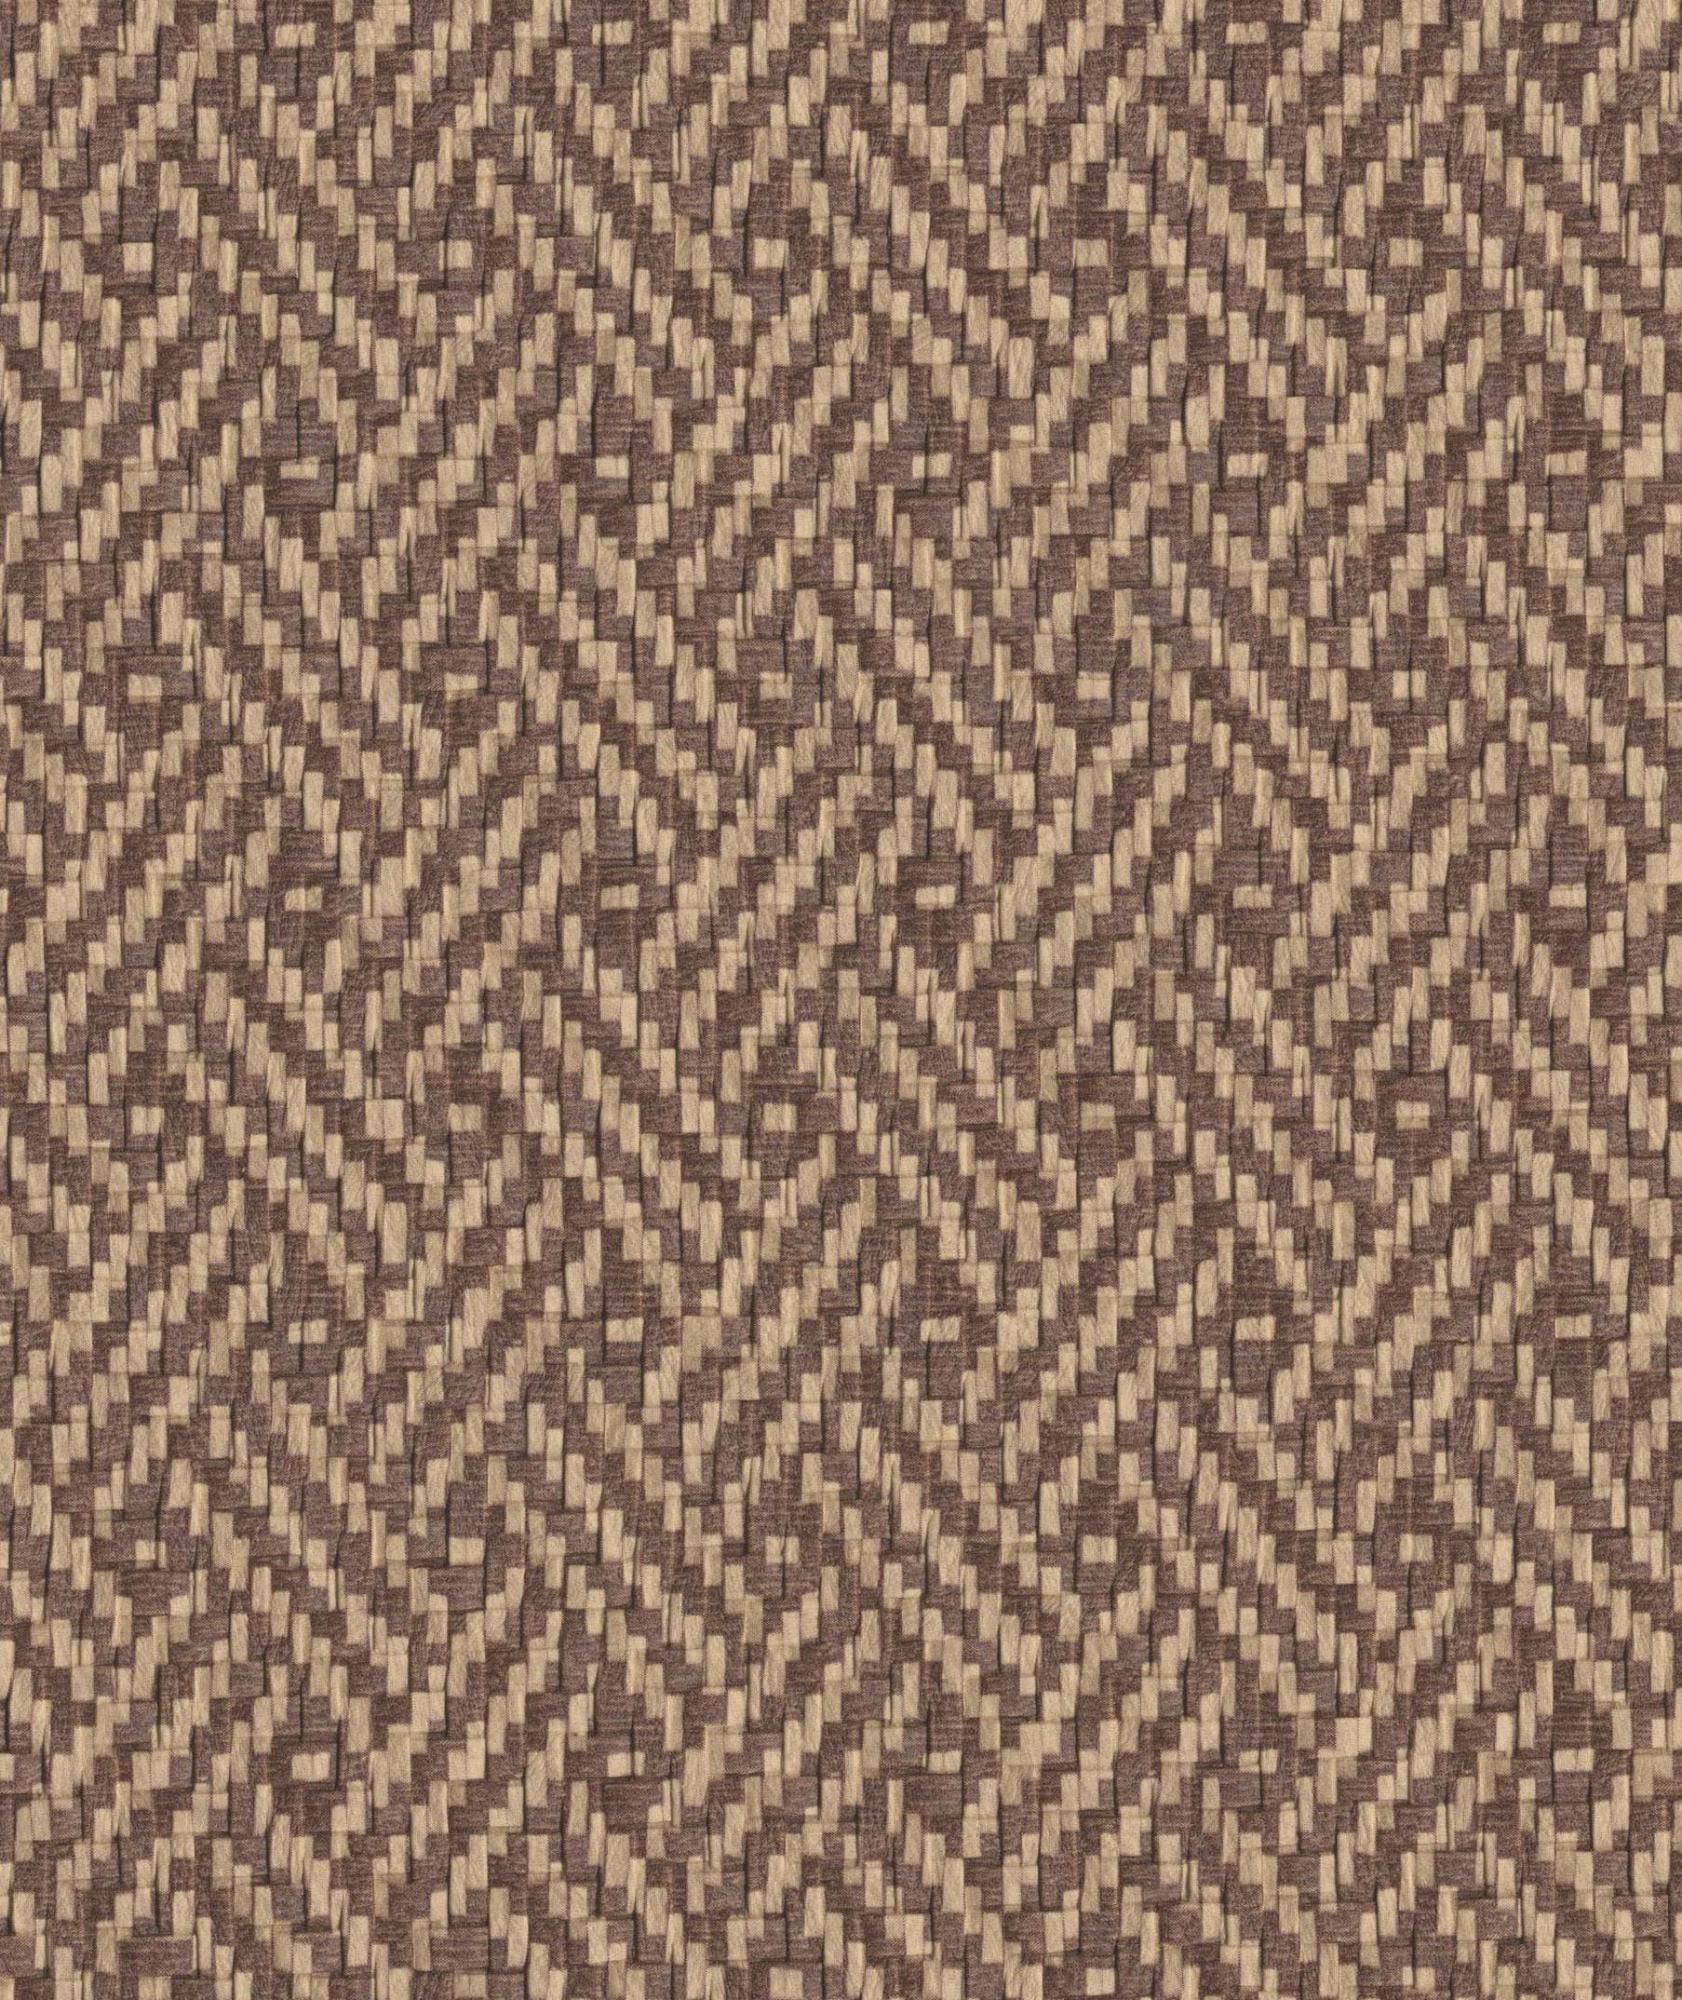 Tela al corte tapicería jacquard canestrino straw(paja) ancho 140 cm